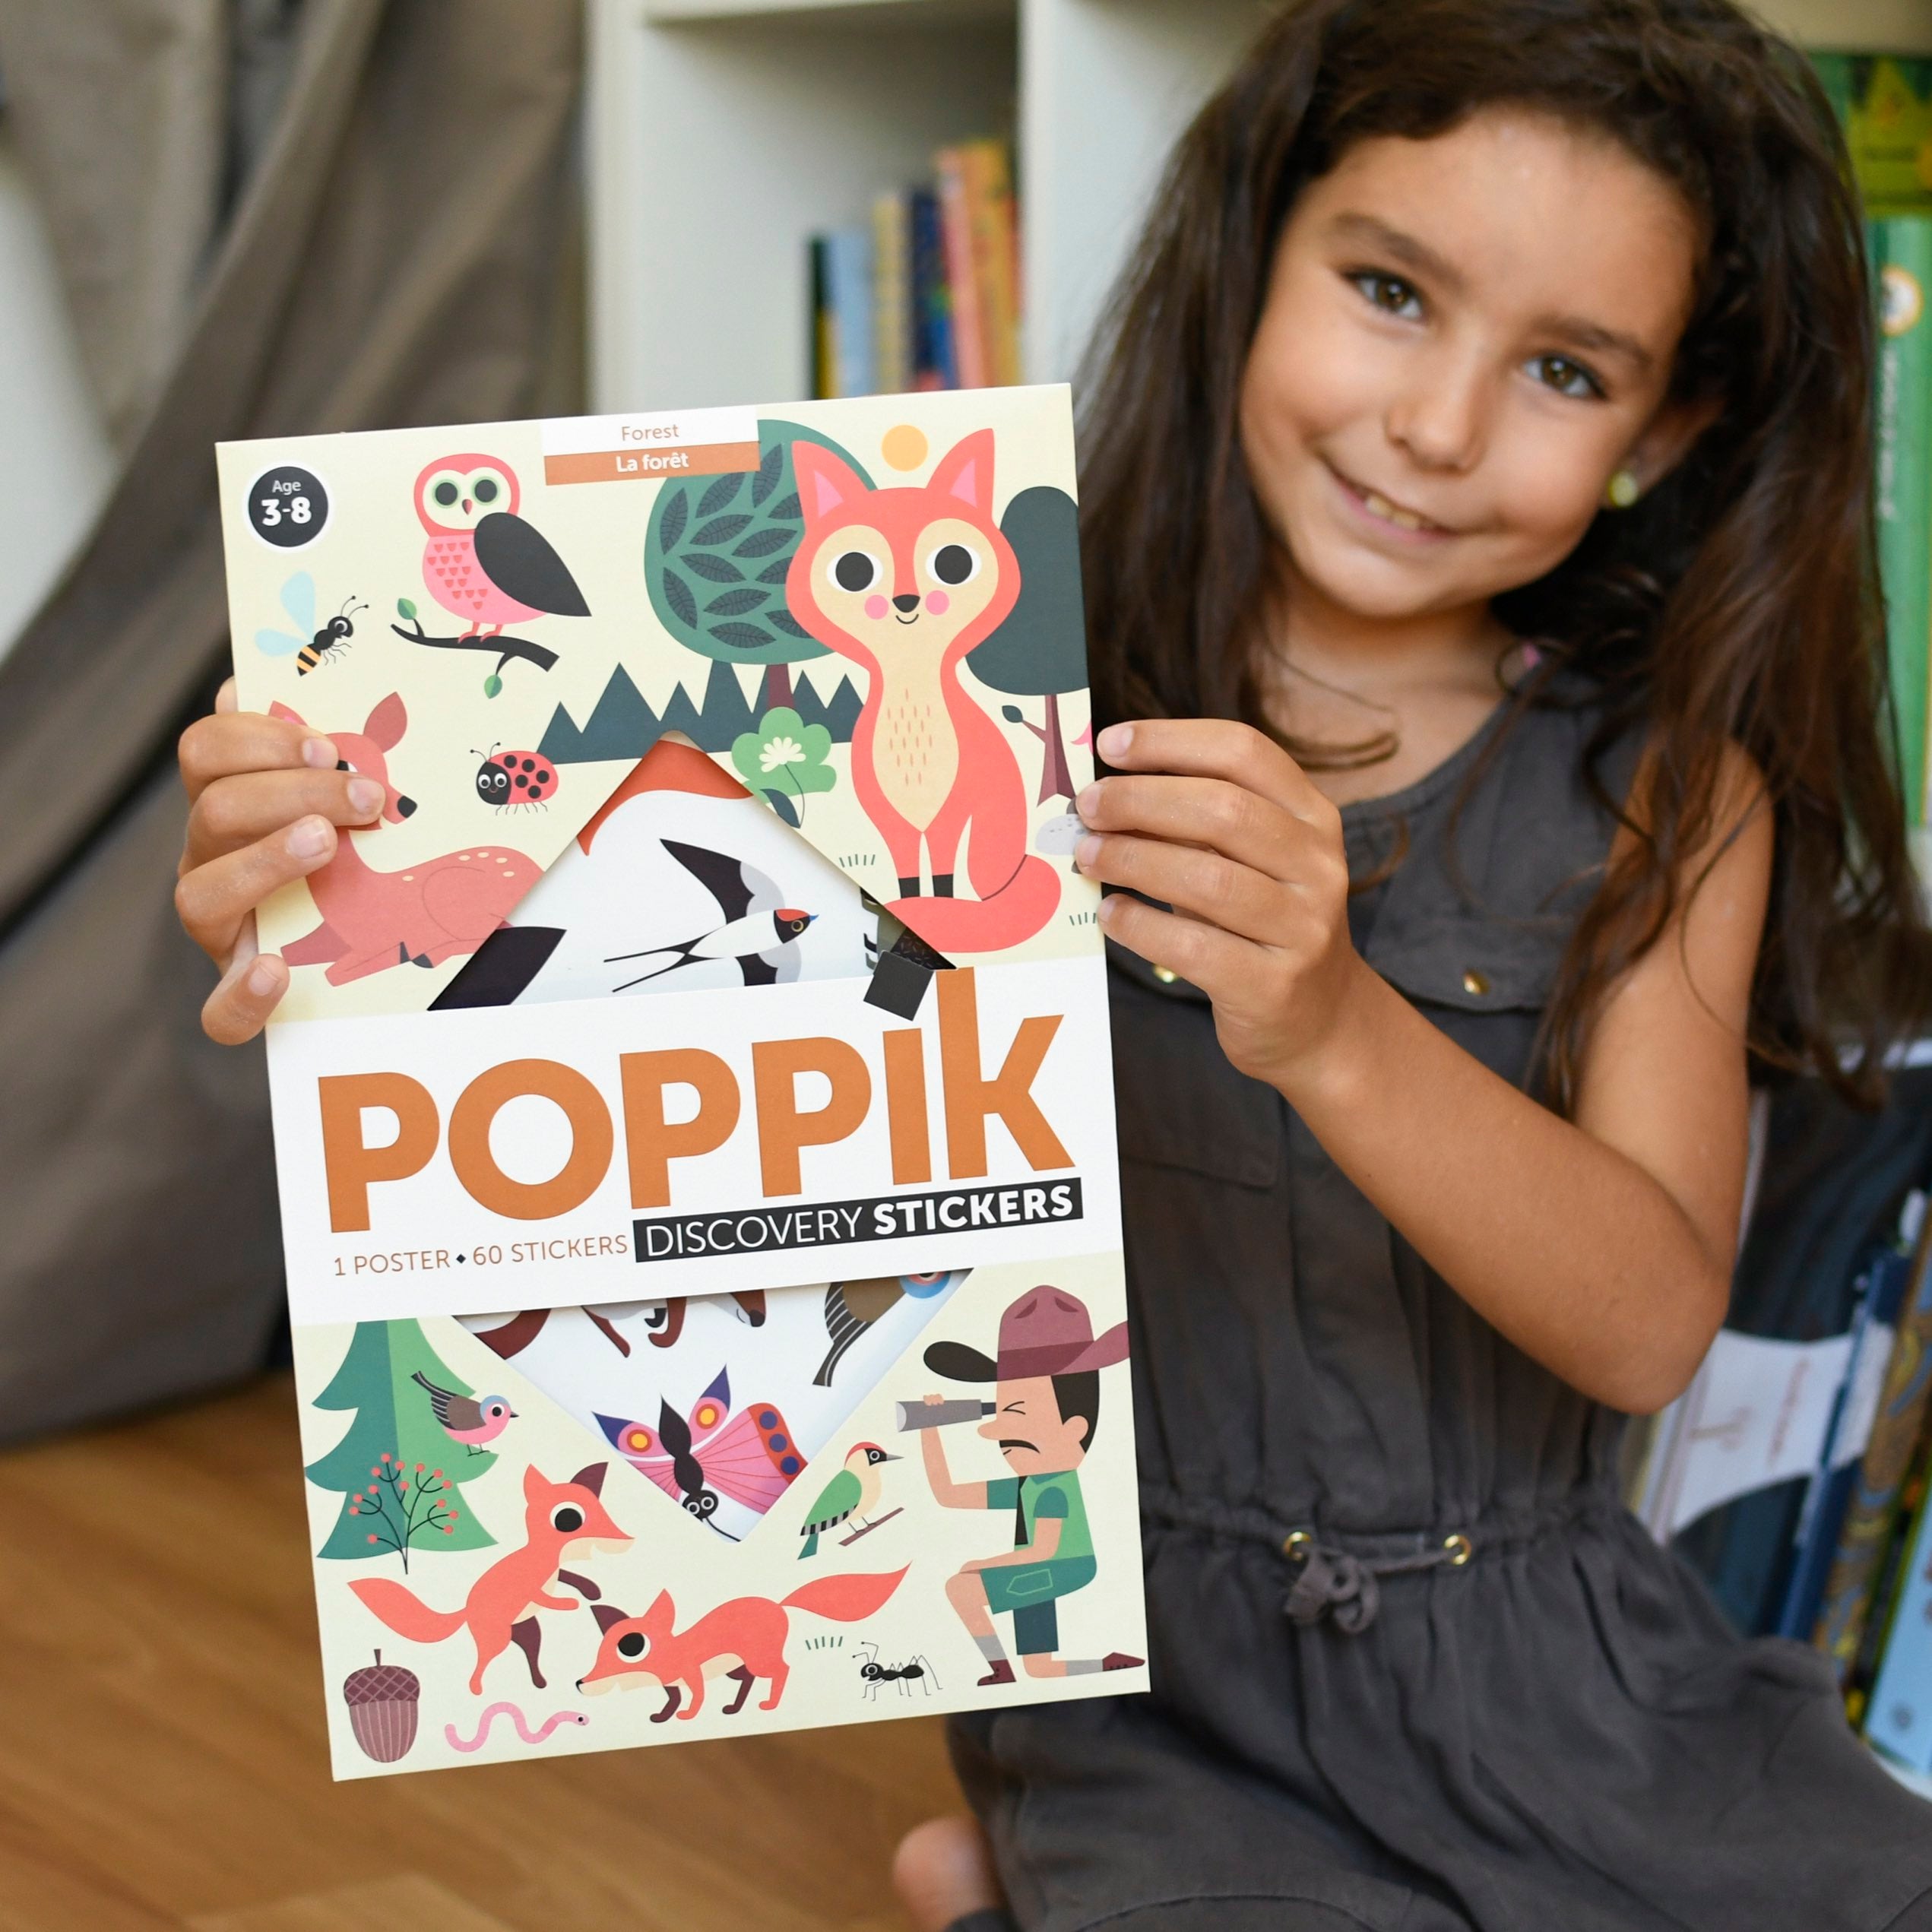 Poppik Educational Sticker Poster | Forest